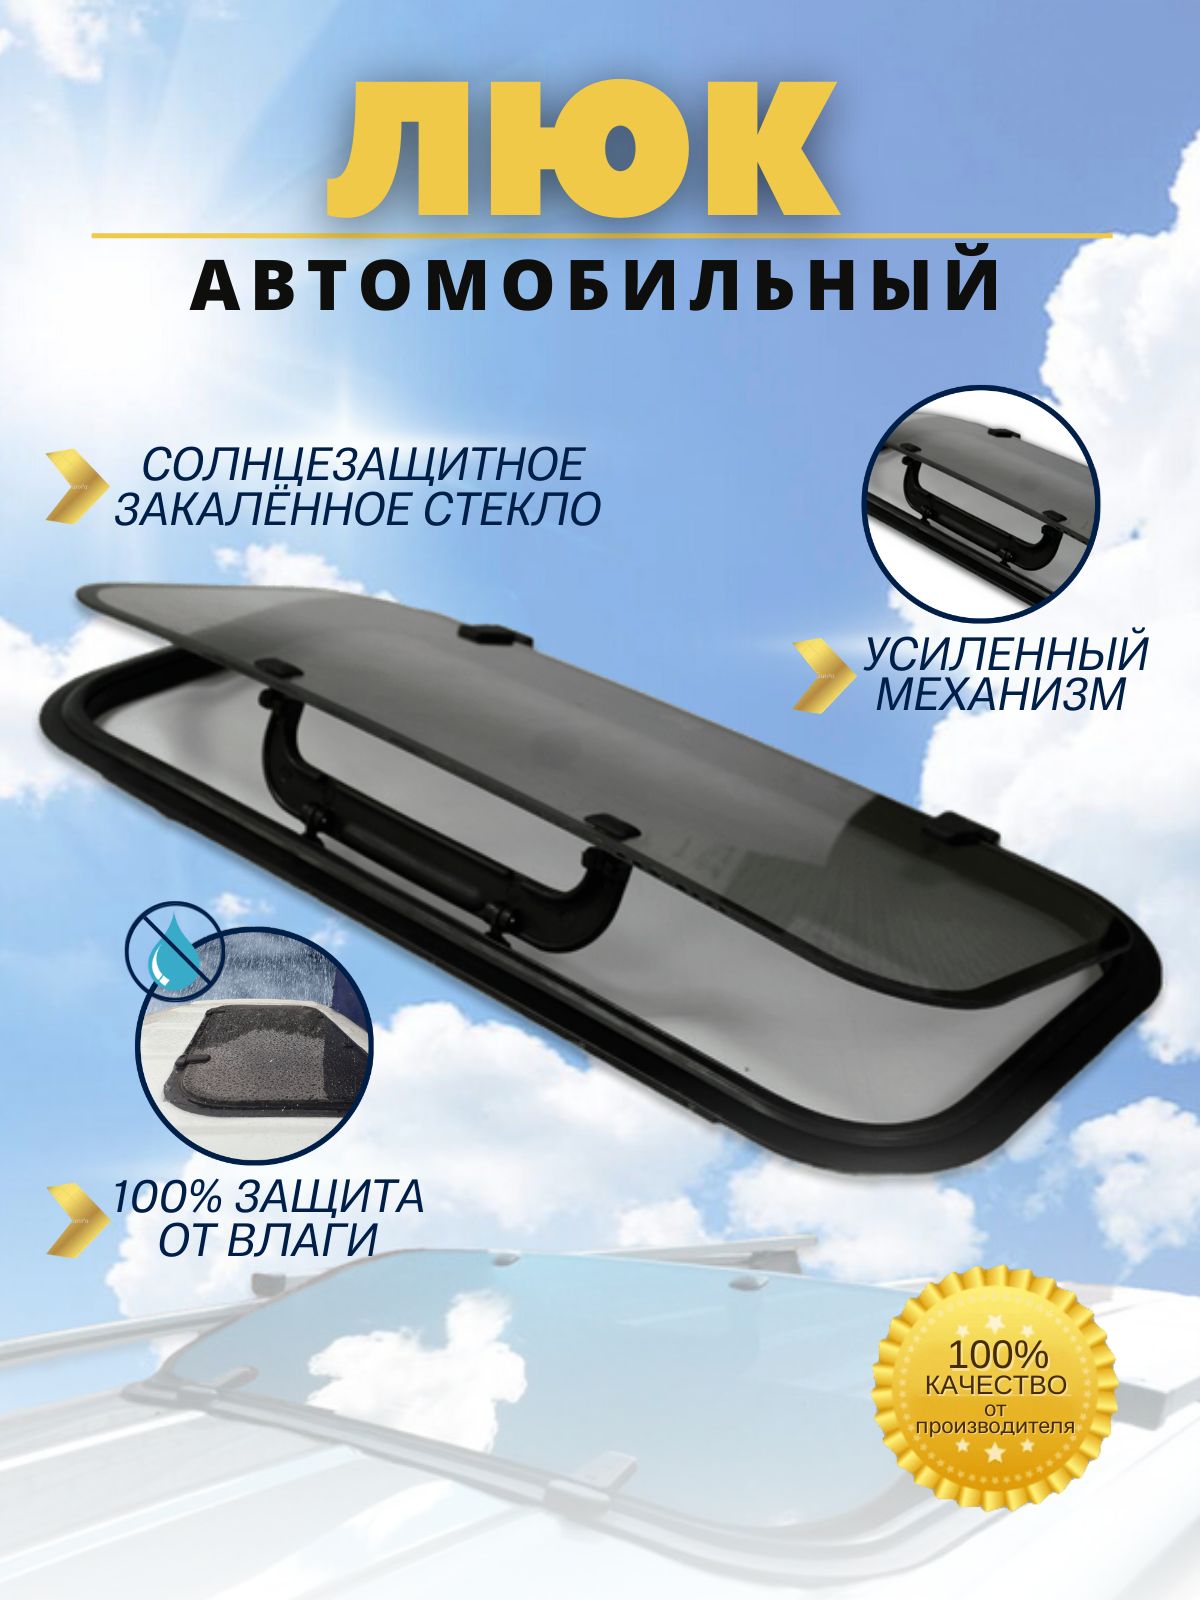 Уплотнитель люка ВАЗ (Lada) - купить в Украине, новые и б/у | натяжныепотолкибрянск.рф